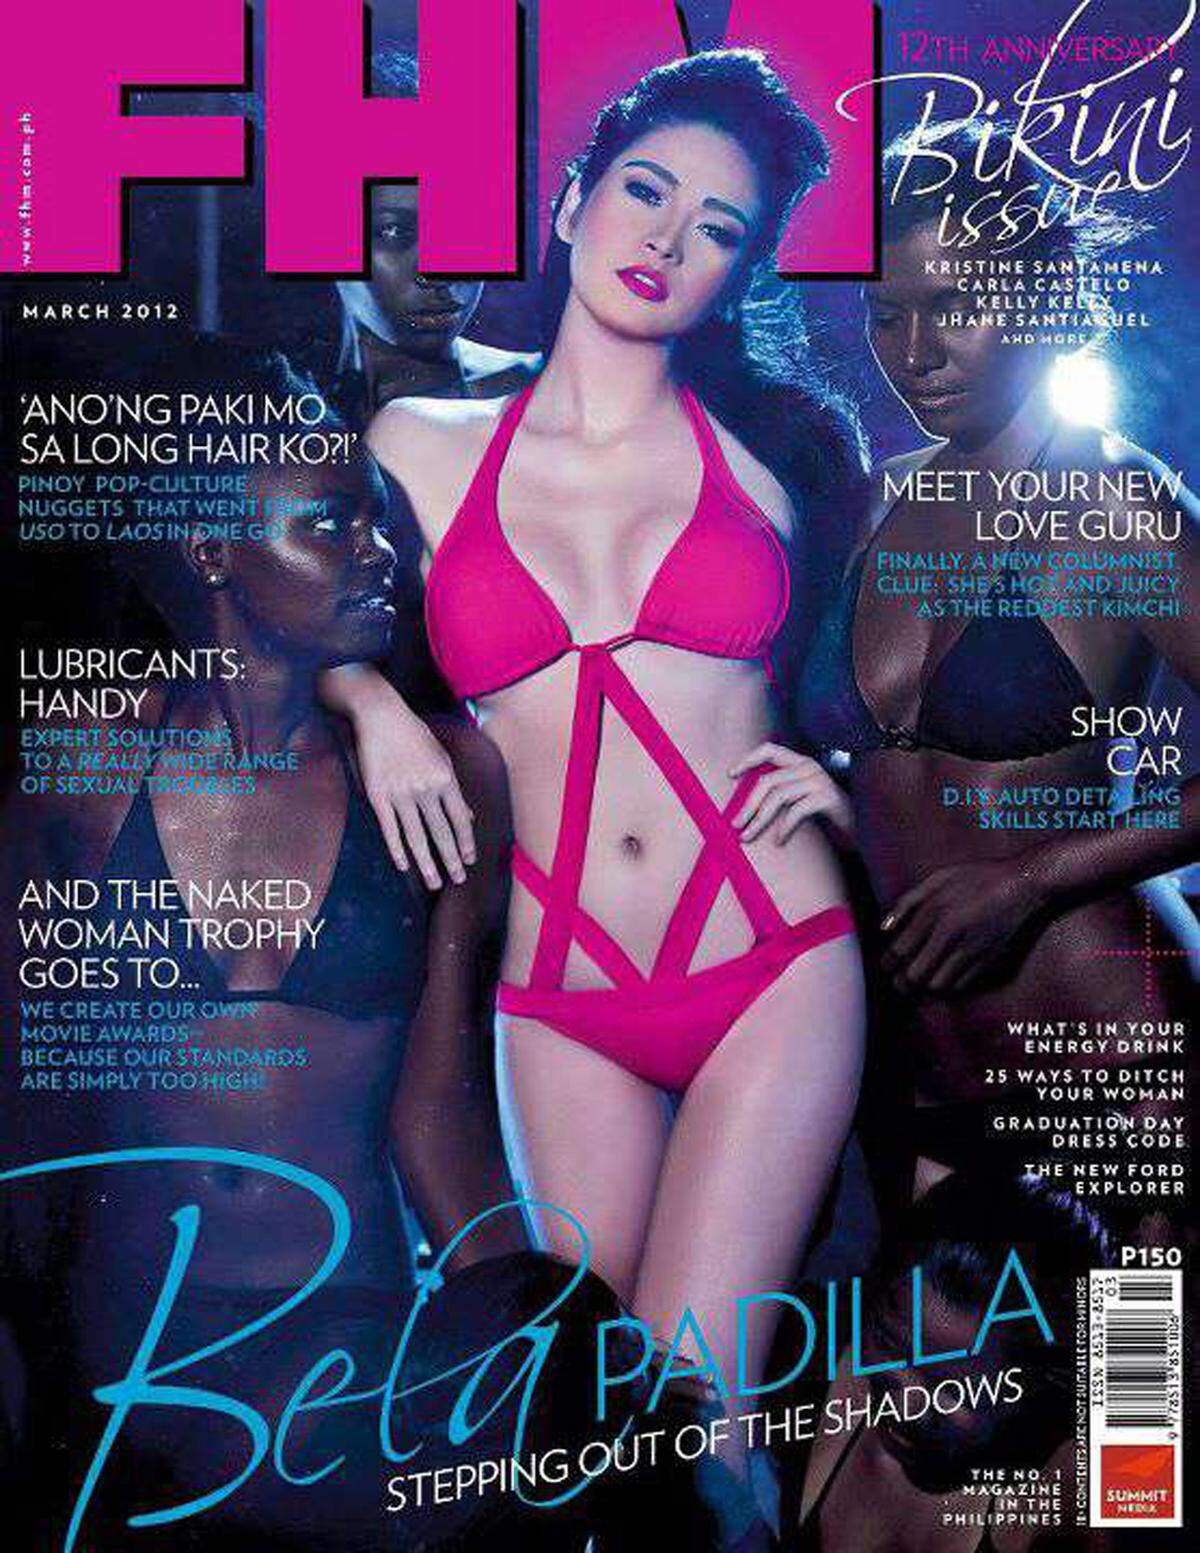 Nach Rassismus-Beschwerden von Facebook-Fans hat das Männermagazin FHM auf den Philippinen ein geplantes Titelfoto zurückgezogen. Auf dem Bild war eine hellhäutige Schauspielerin in Pink zwischen dunkelhäutigen Models in Schwarz zu sehen. Die Bildunterschrift lautete: "aus dem Schatten treten".